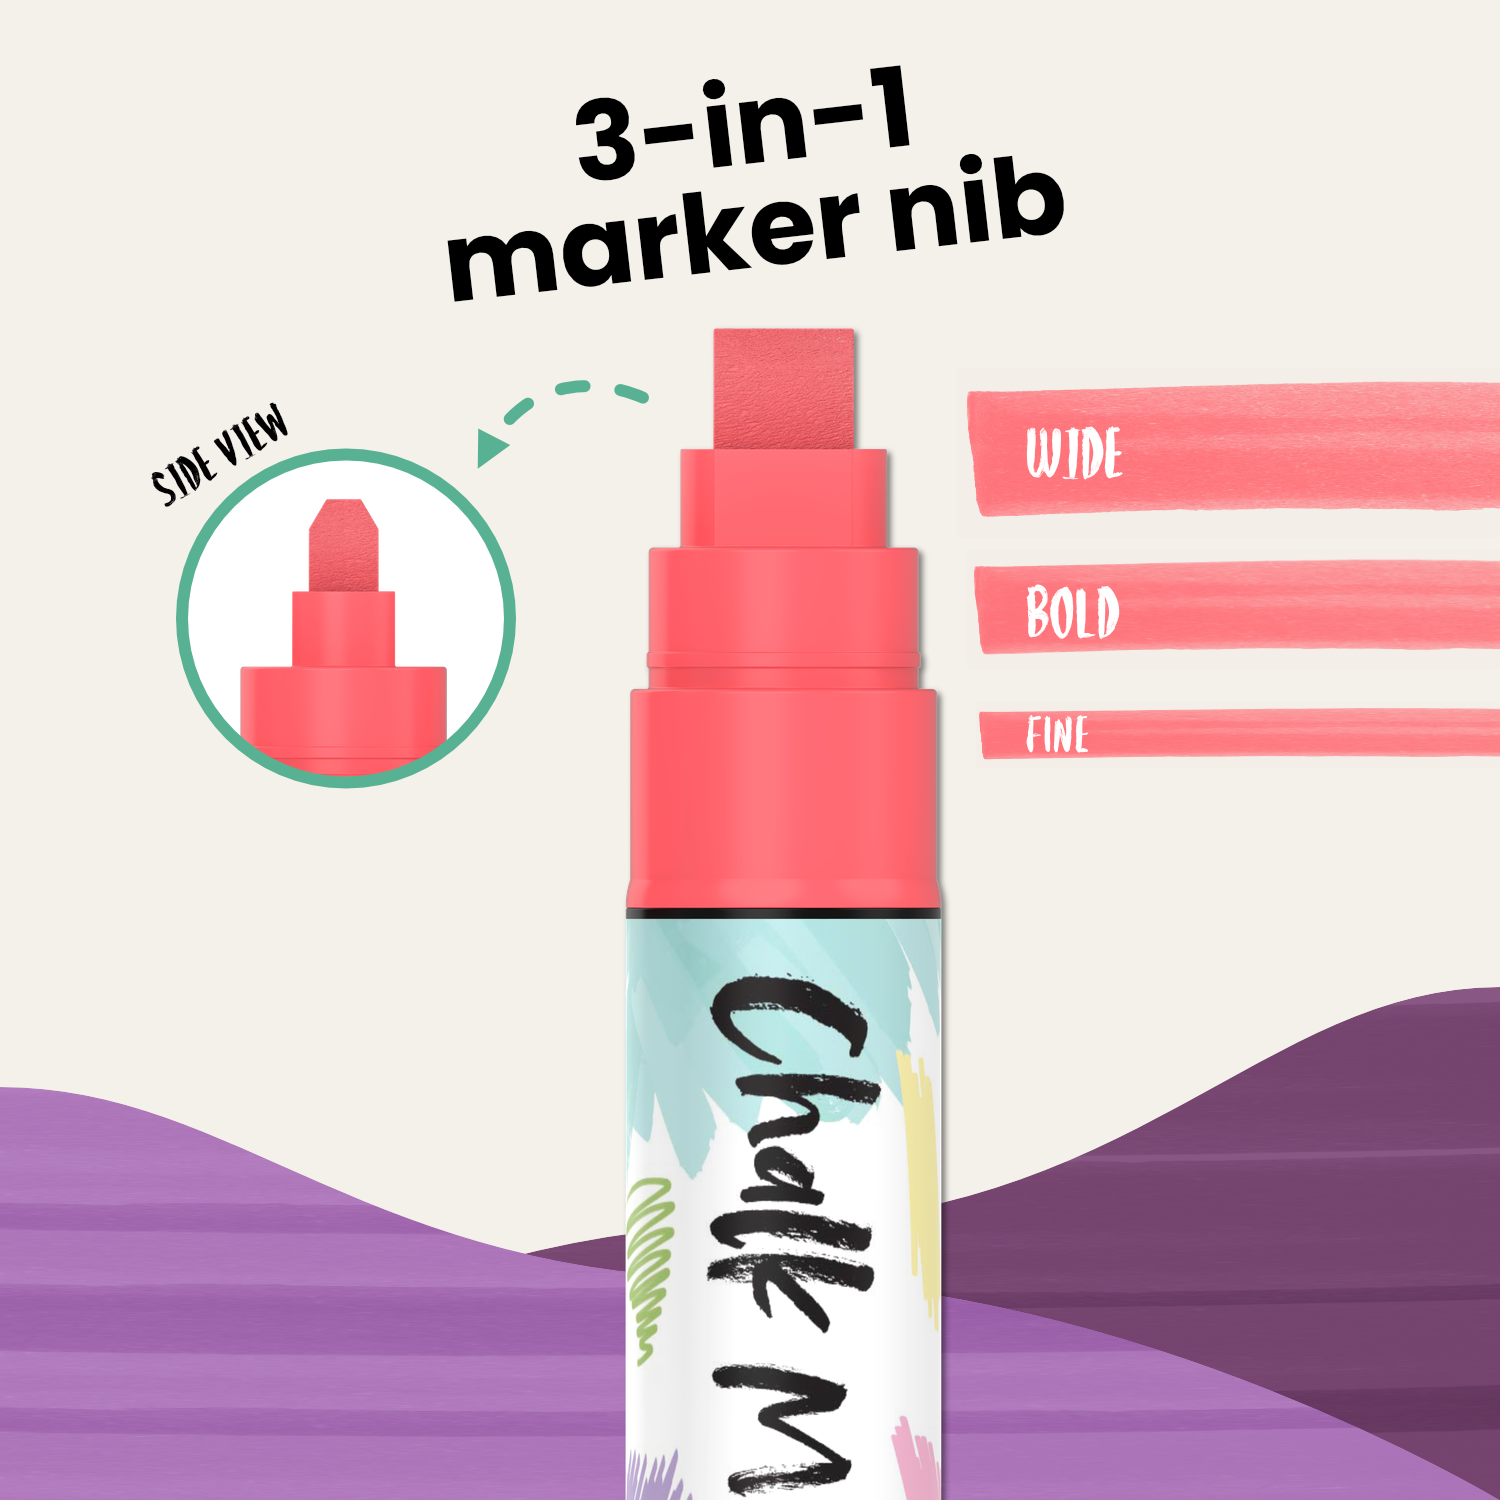 Liquid Chalk Markers for Chalkboard (20 Vintage Colors) - Bold Dry Erase  Marker